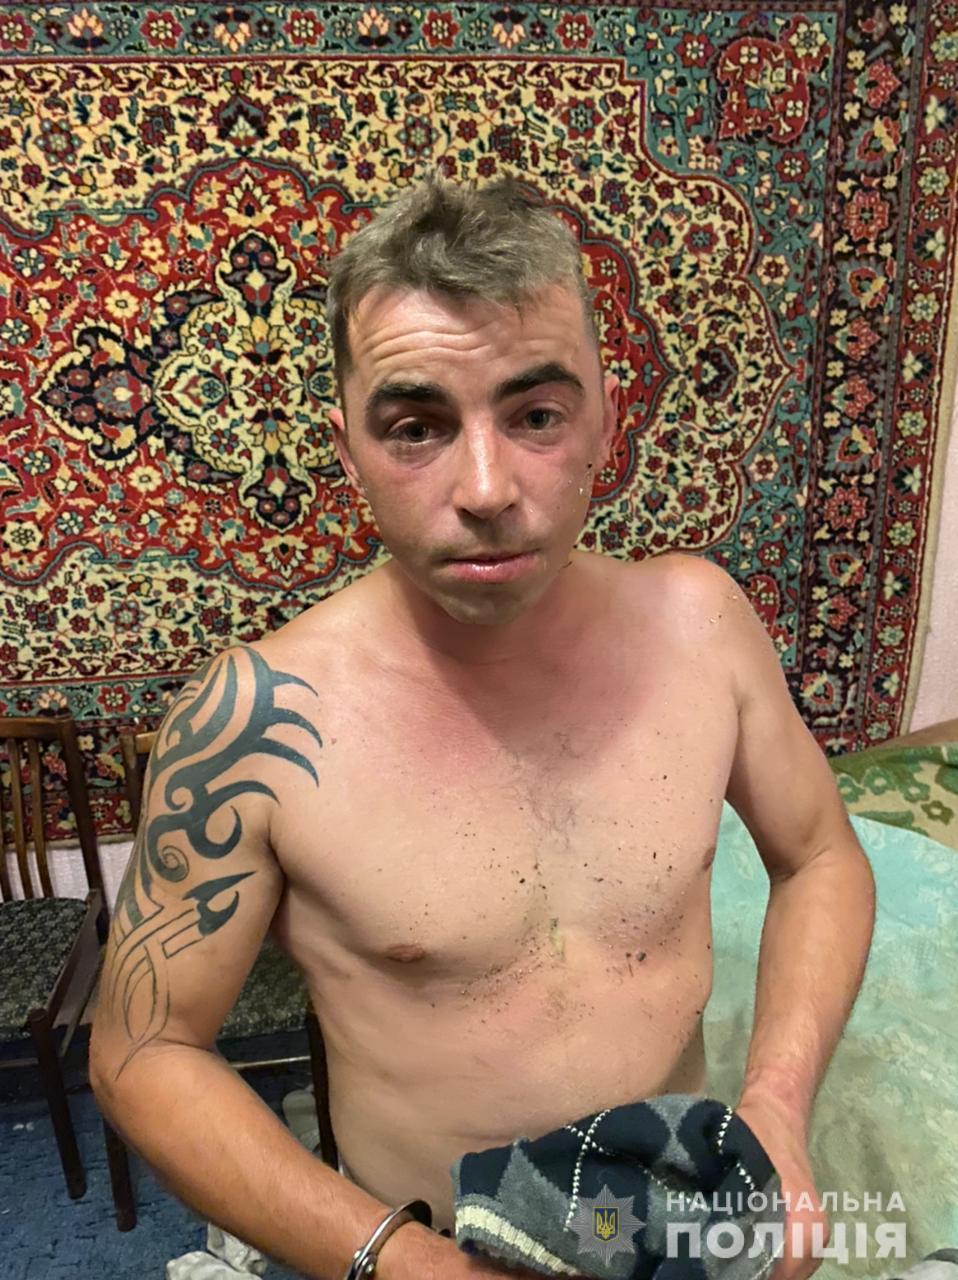 В Киеве из-под стражи сбежал преступник. Полиция просит помочь поймать